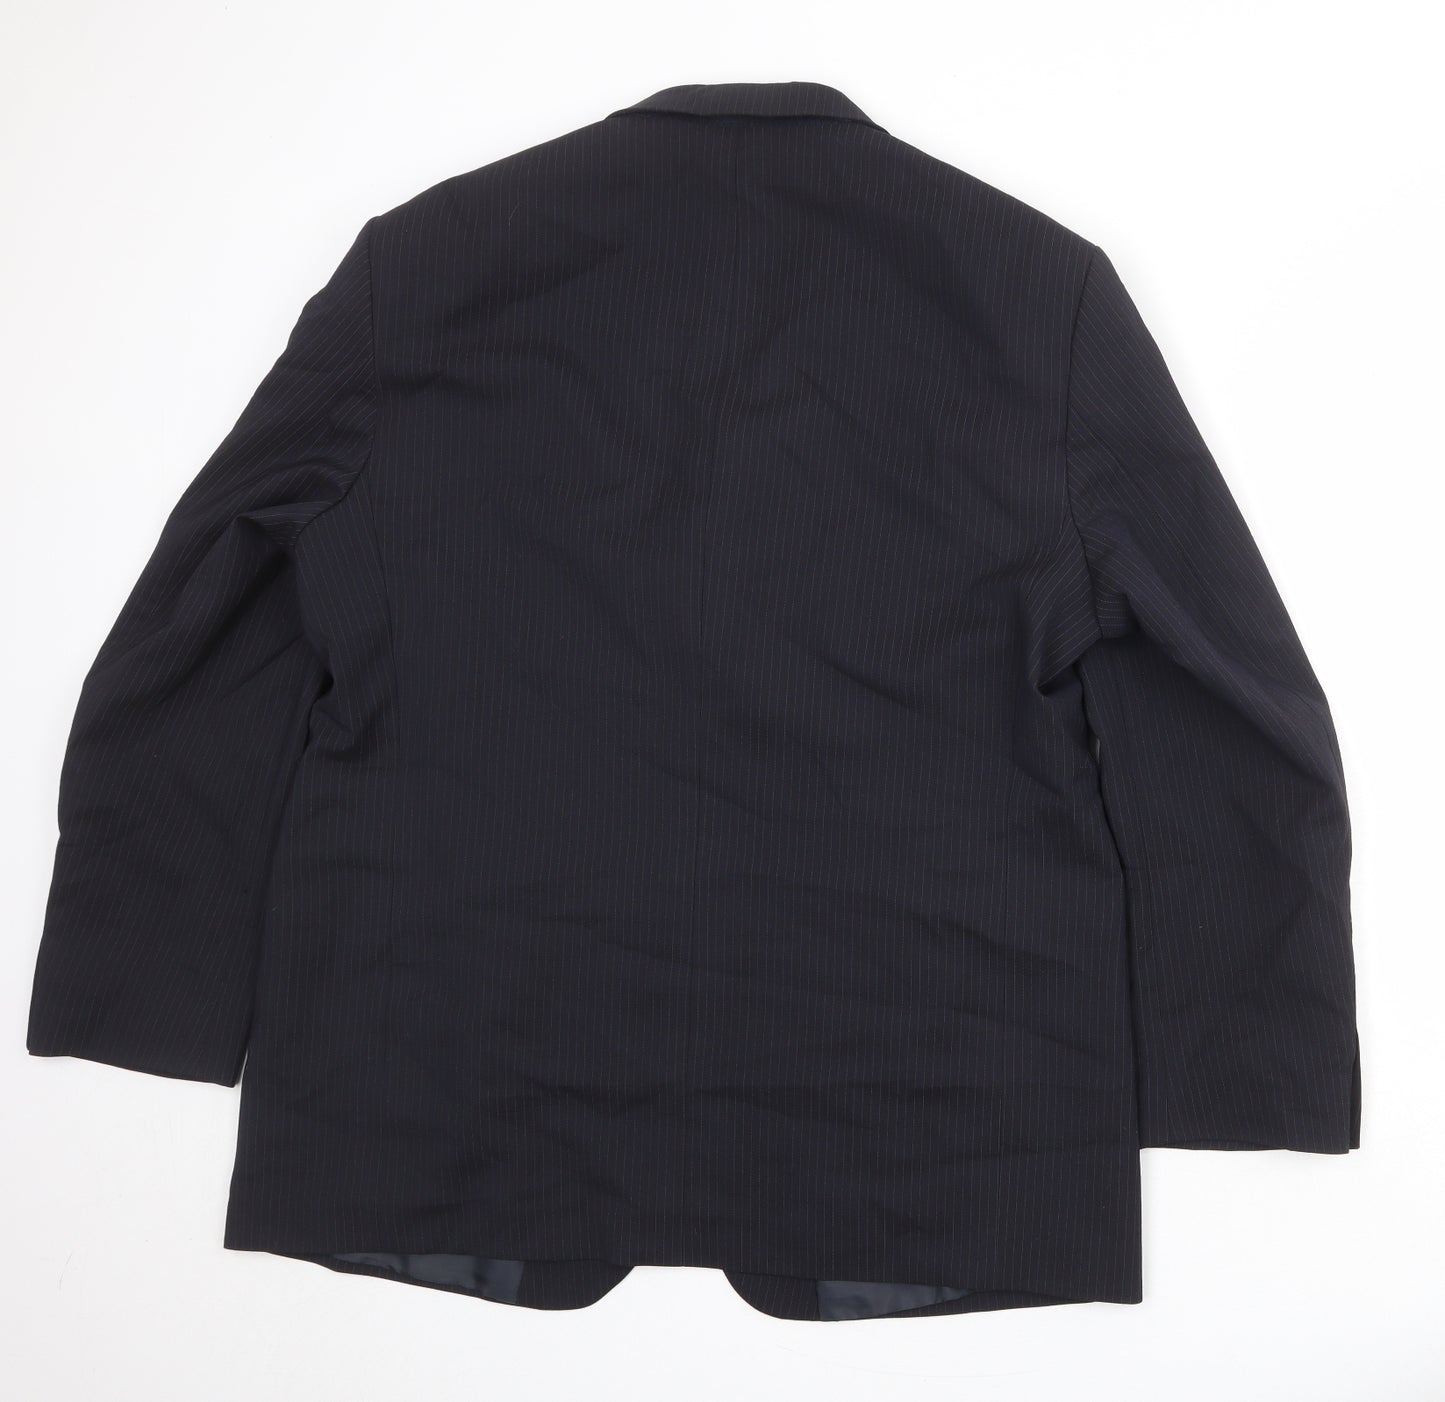 Marks and Spencer Mens Blue Striped Polyester Jacket Suit Jacket Size 46 Regular